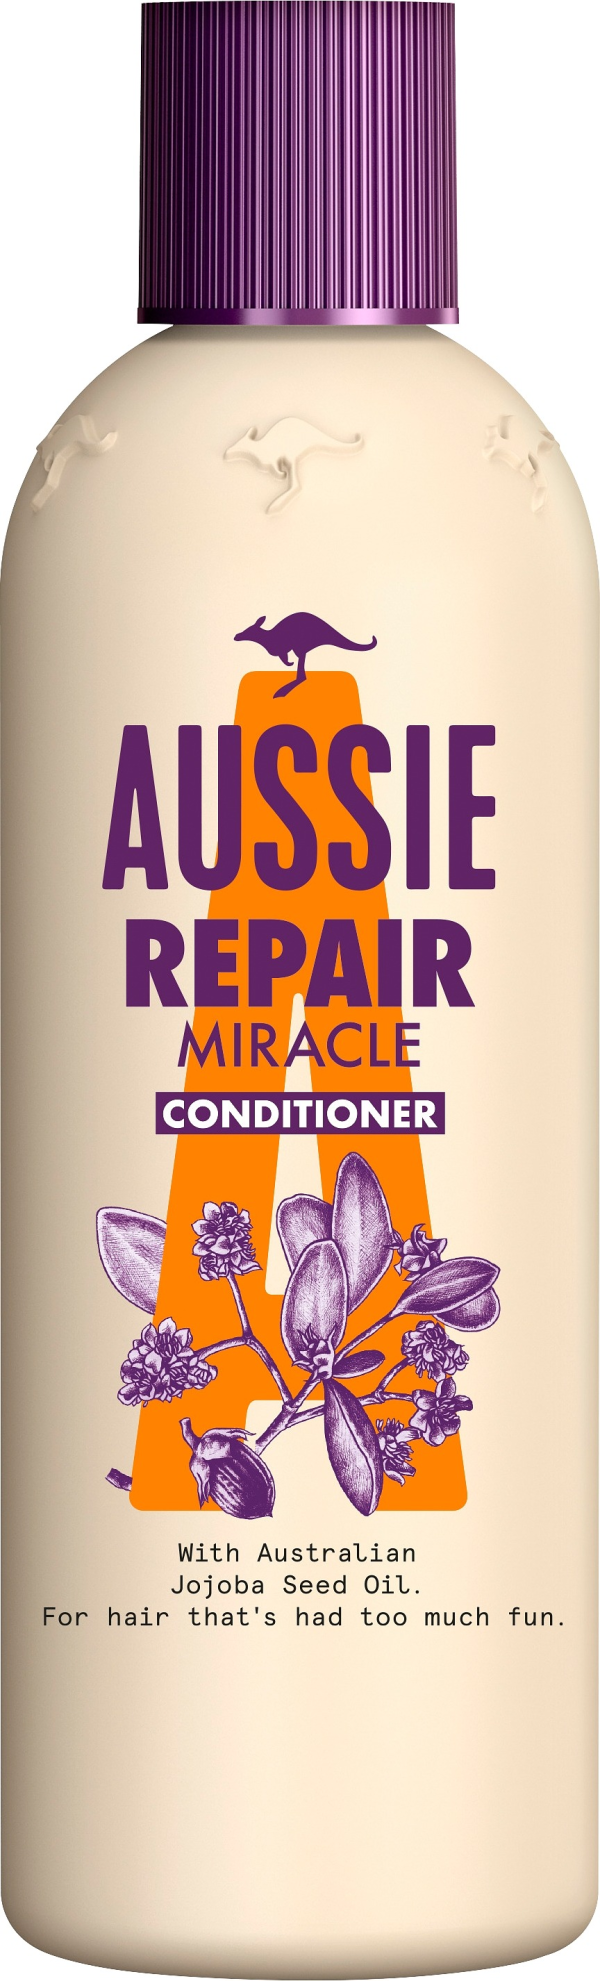 Aussie conditioner repair 250 ml